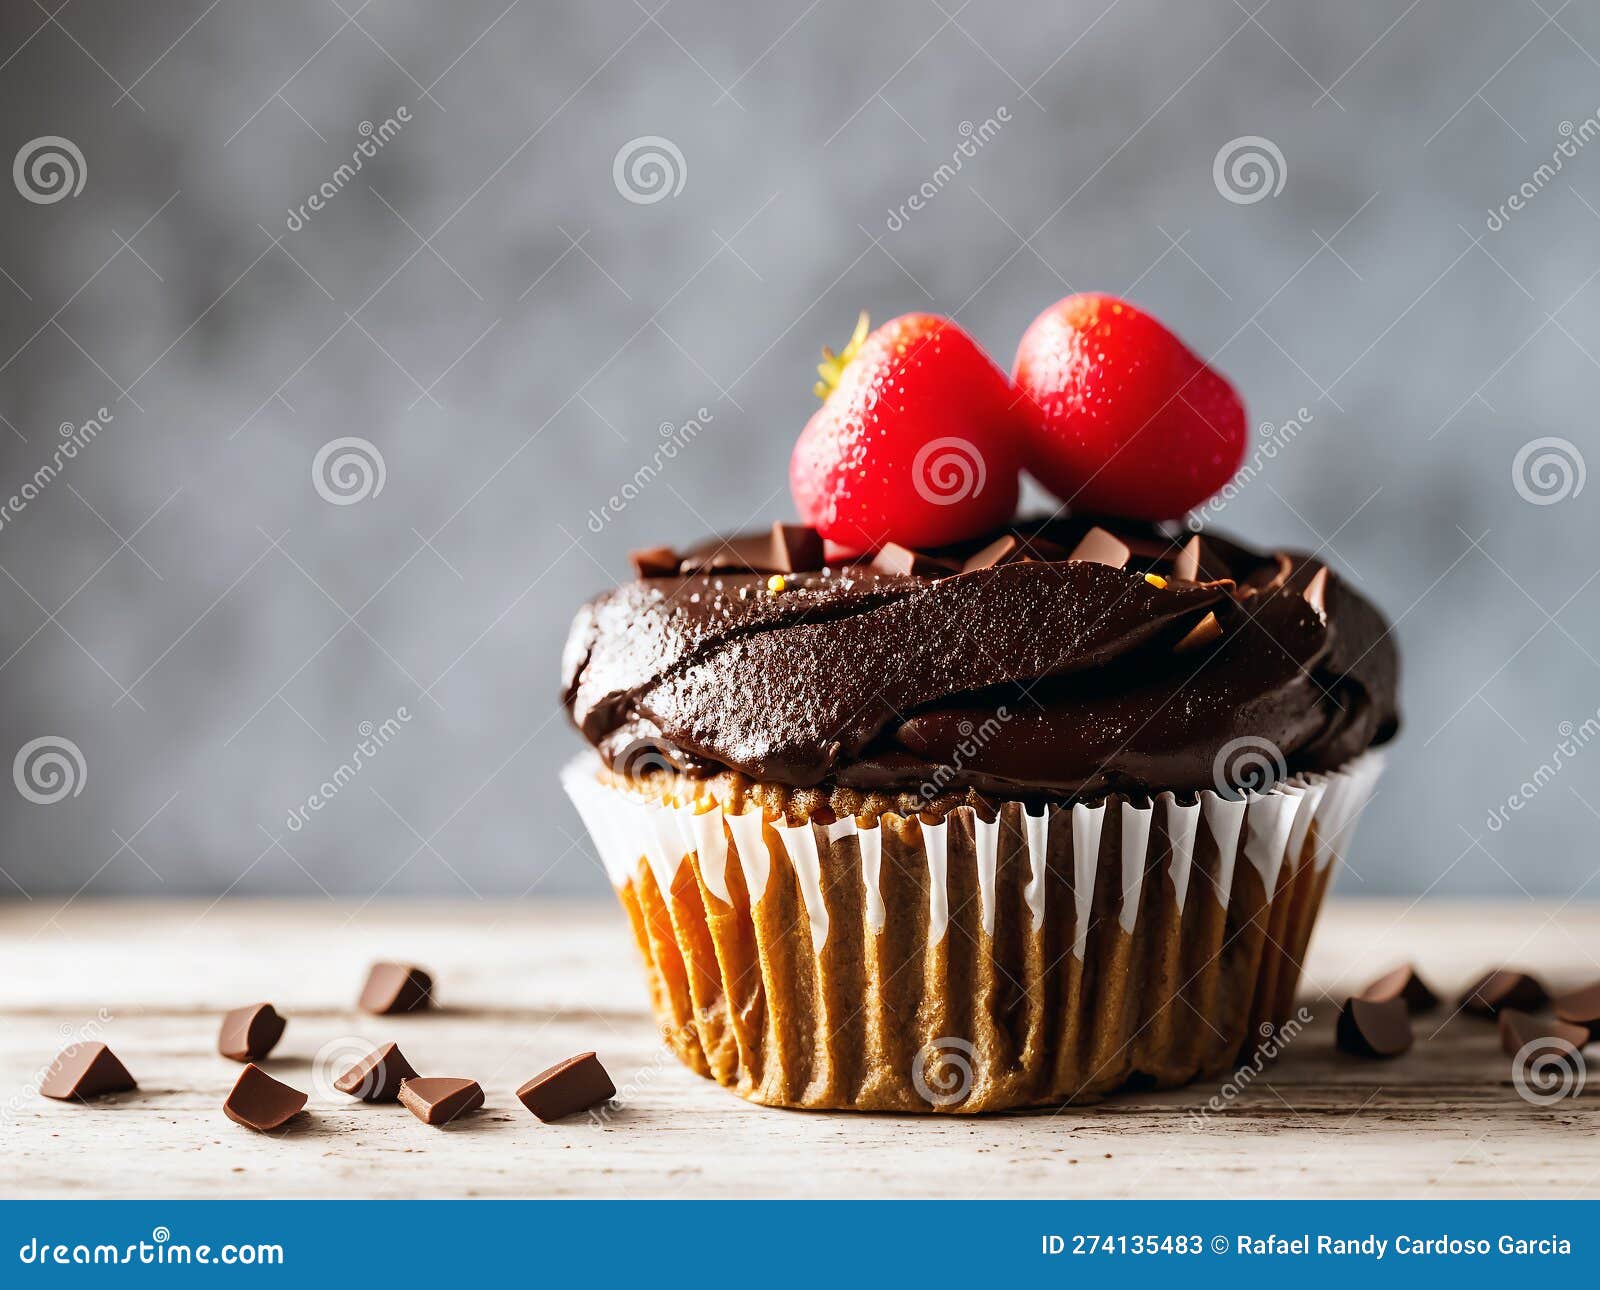 Les vermicelles de chocolat, la touche gourmande à vos recettes sucrées,  cupcakes, donuts, cakes